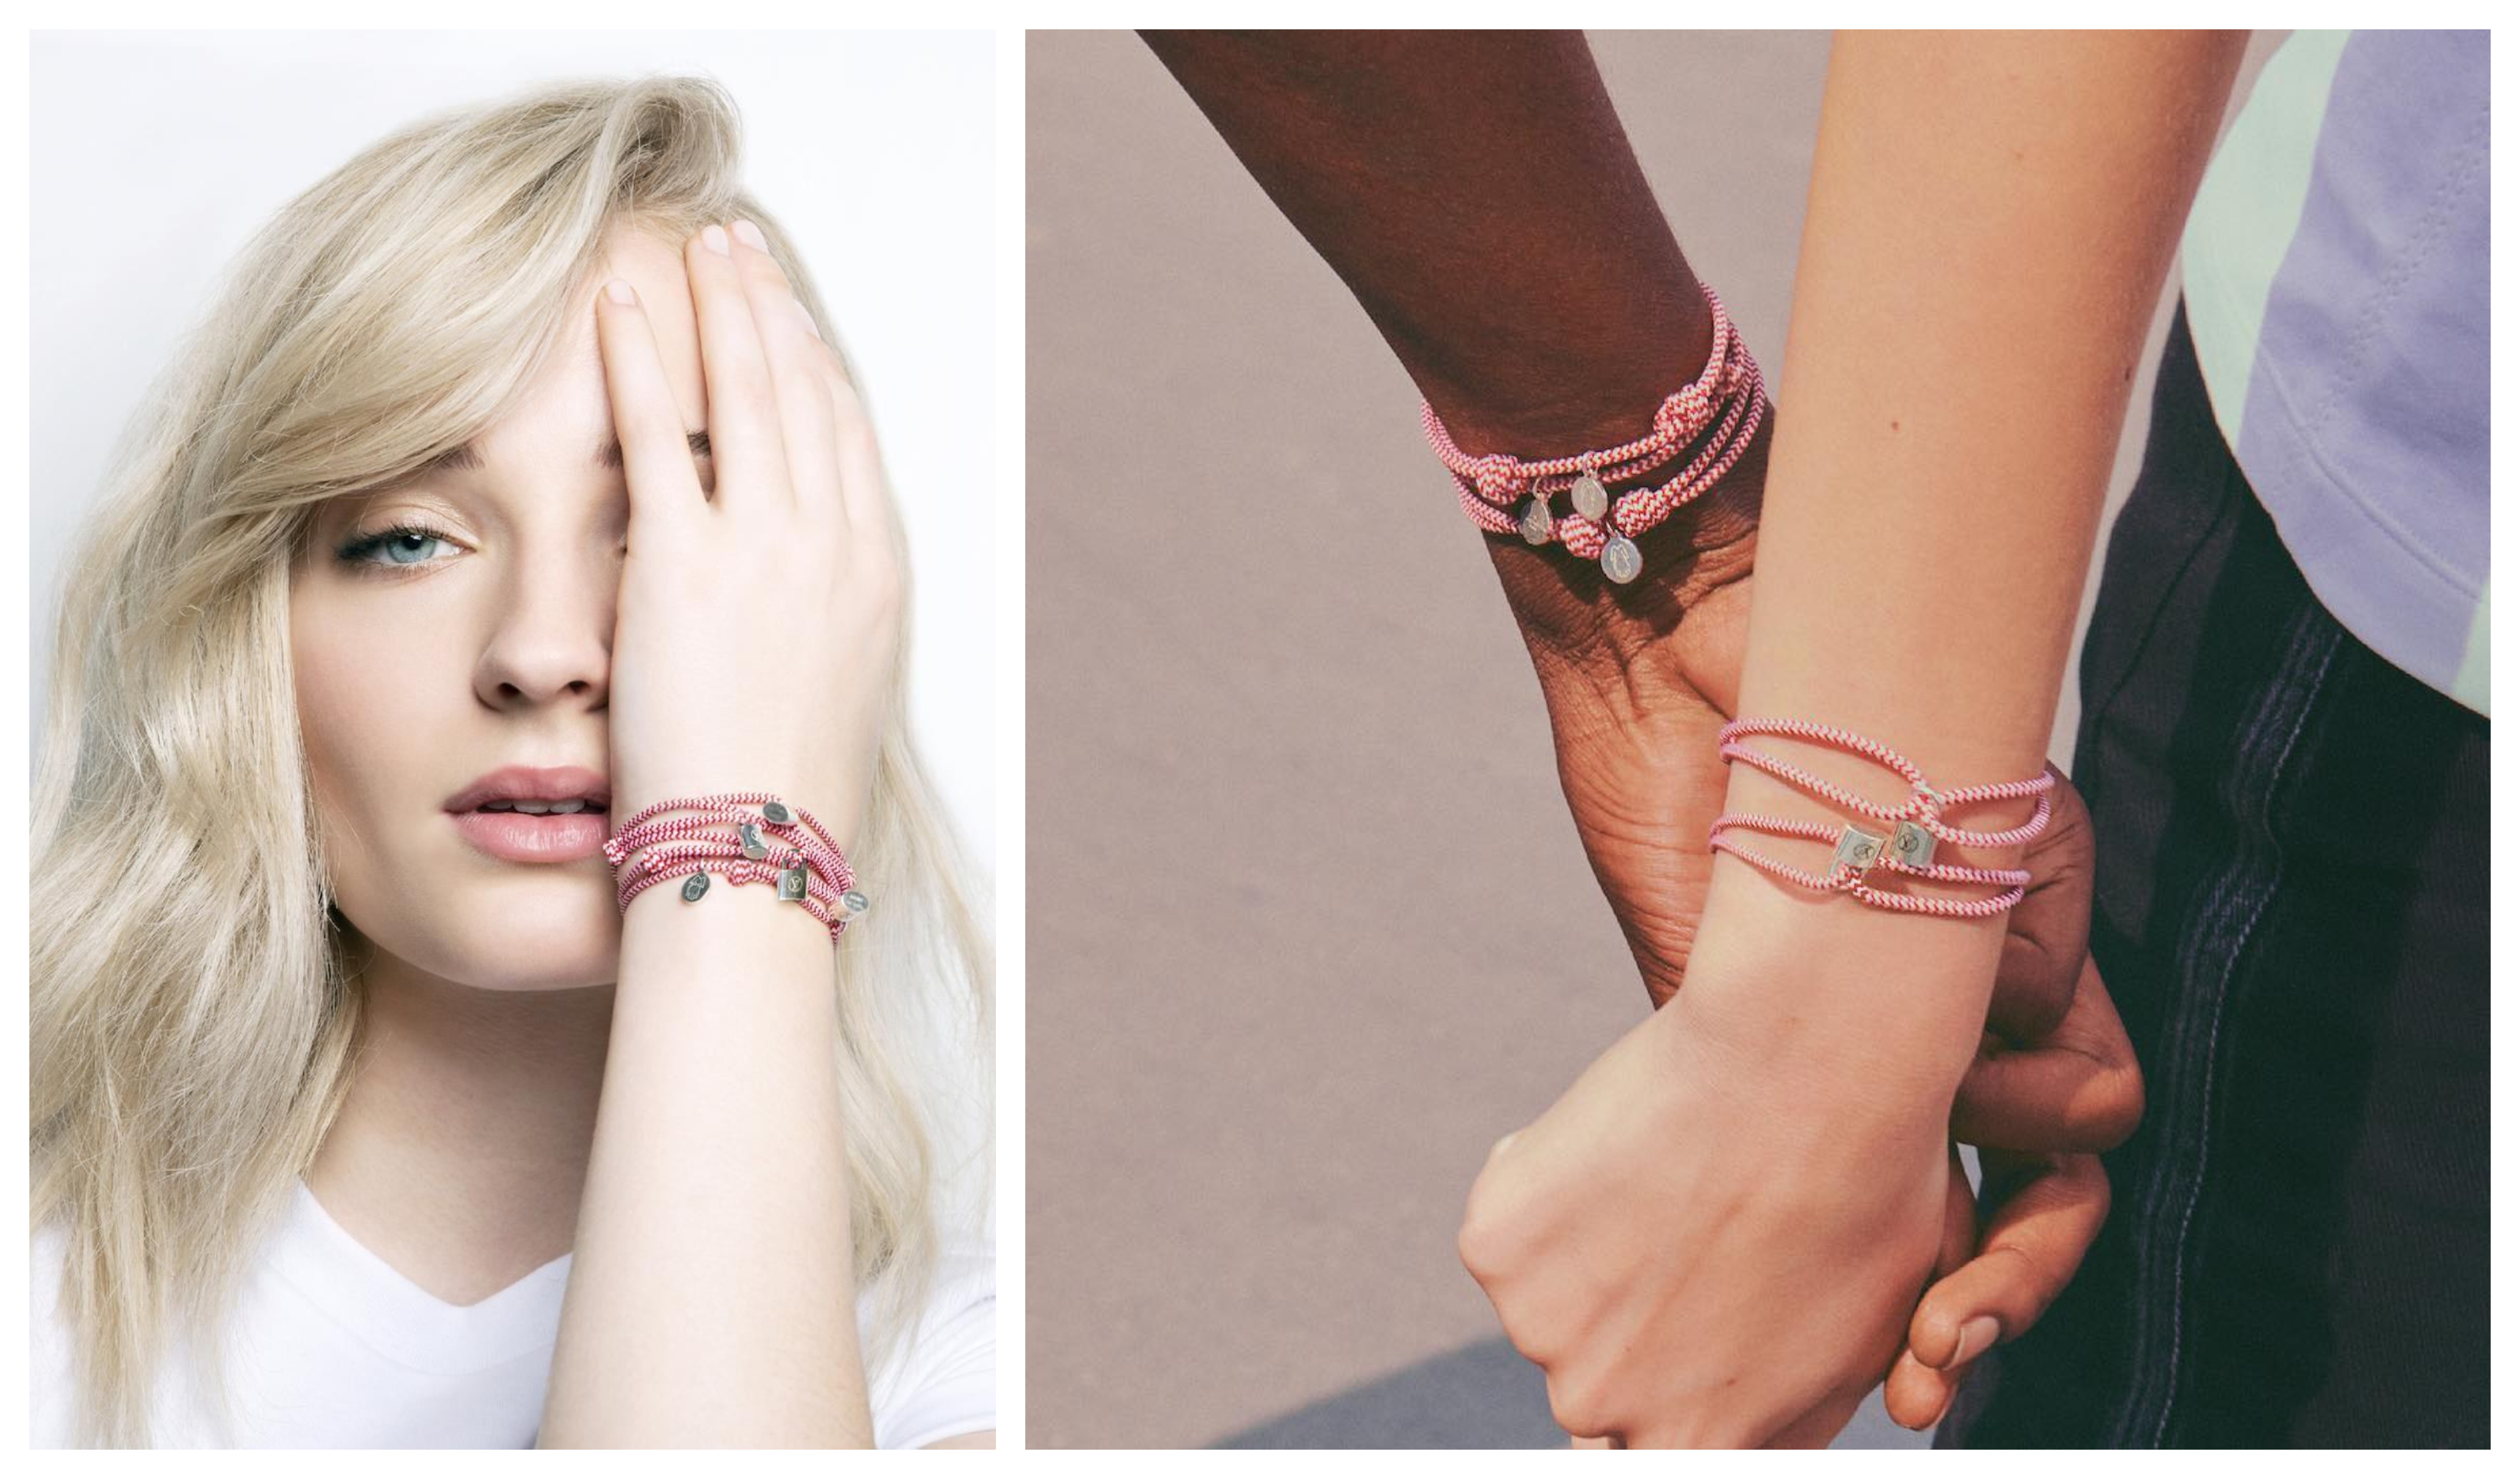 Louis Vuitton for UNICEF #bracelet #sophieturner #louisvuitton